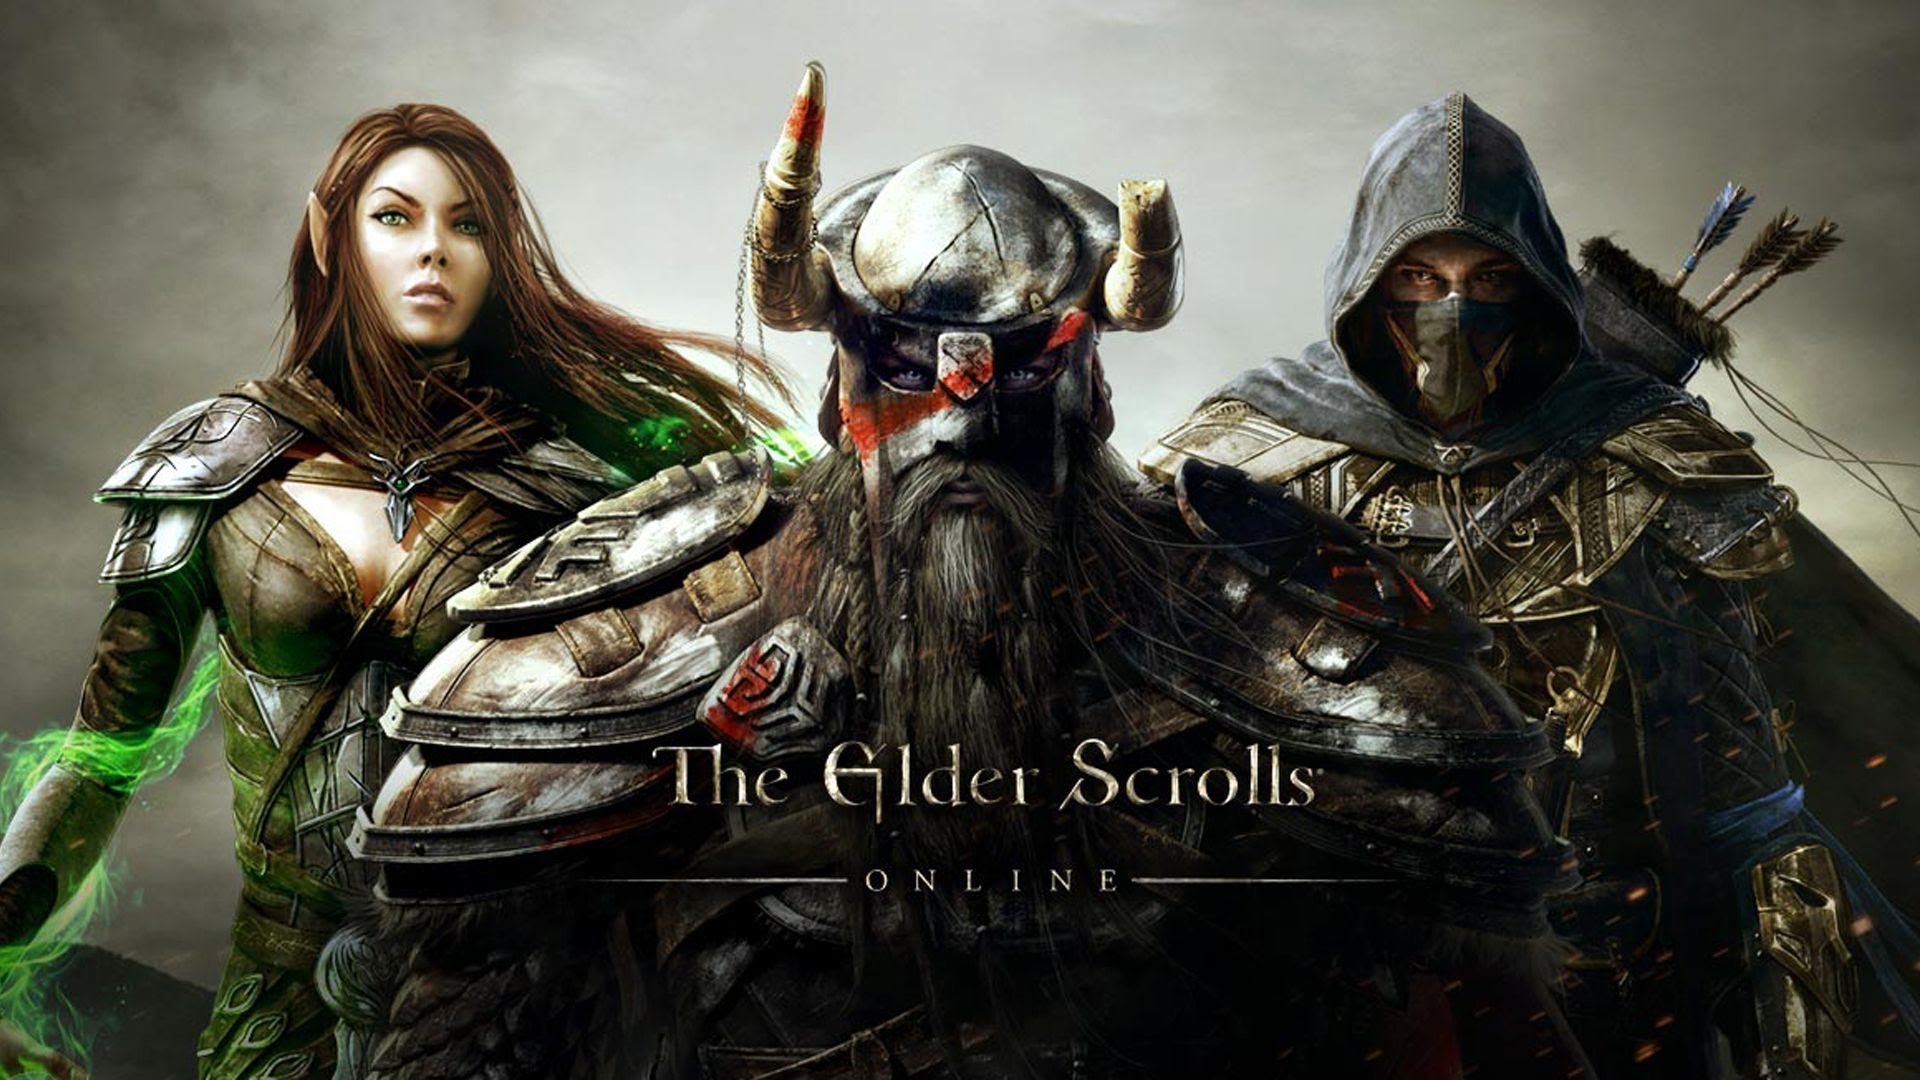 Juega gratis The Elder Scrolls Online este fin de semana en PlayStation 4 y PlayStation 4 Pro